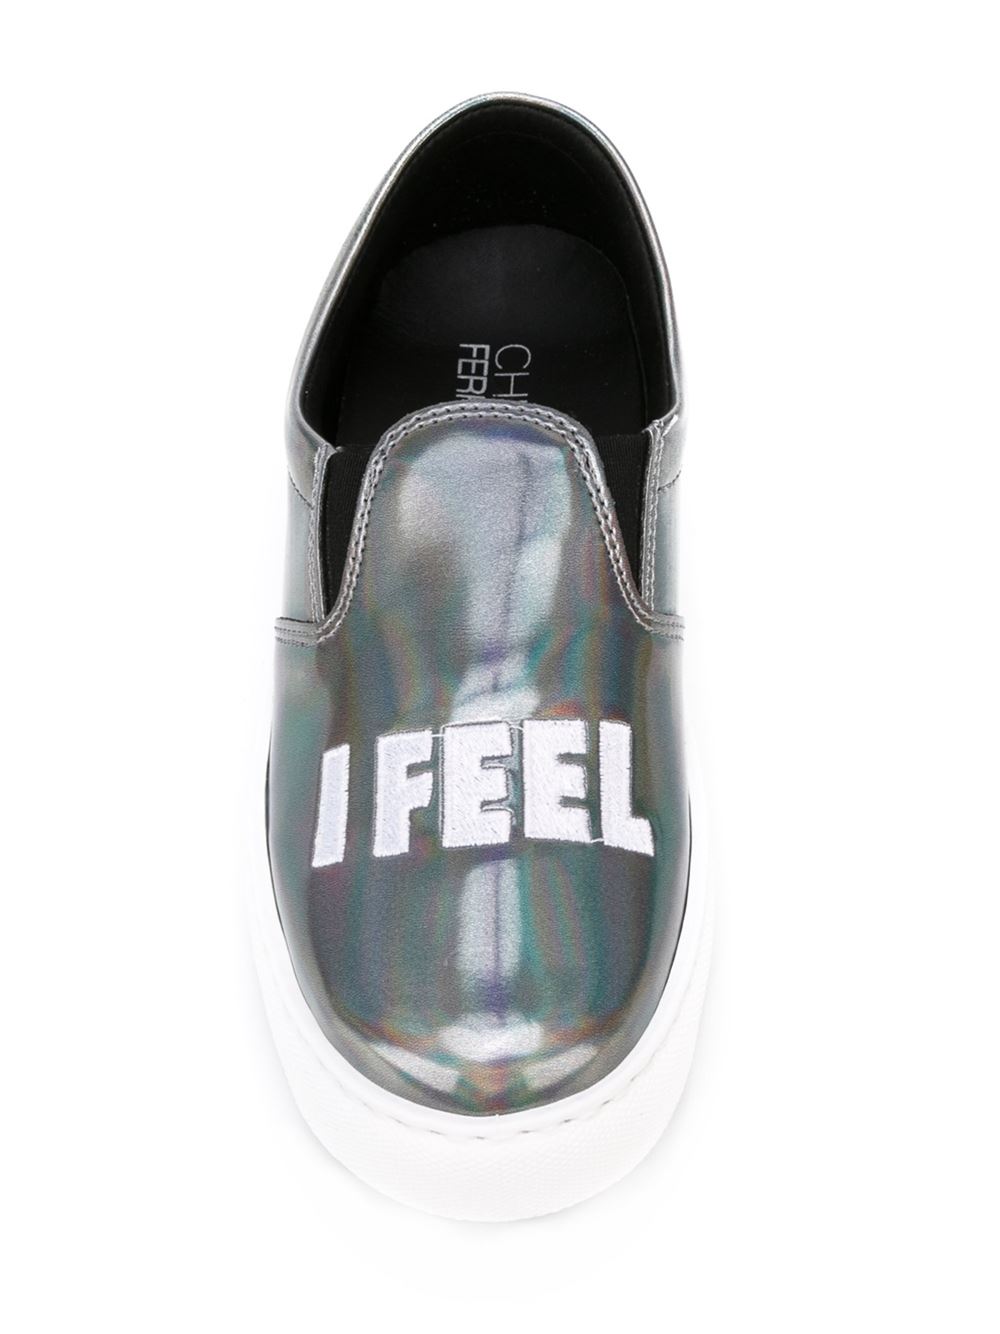 CHIARA FERRAGNI 'Flirting' Slip-on Skate Shoes